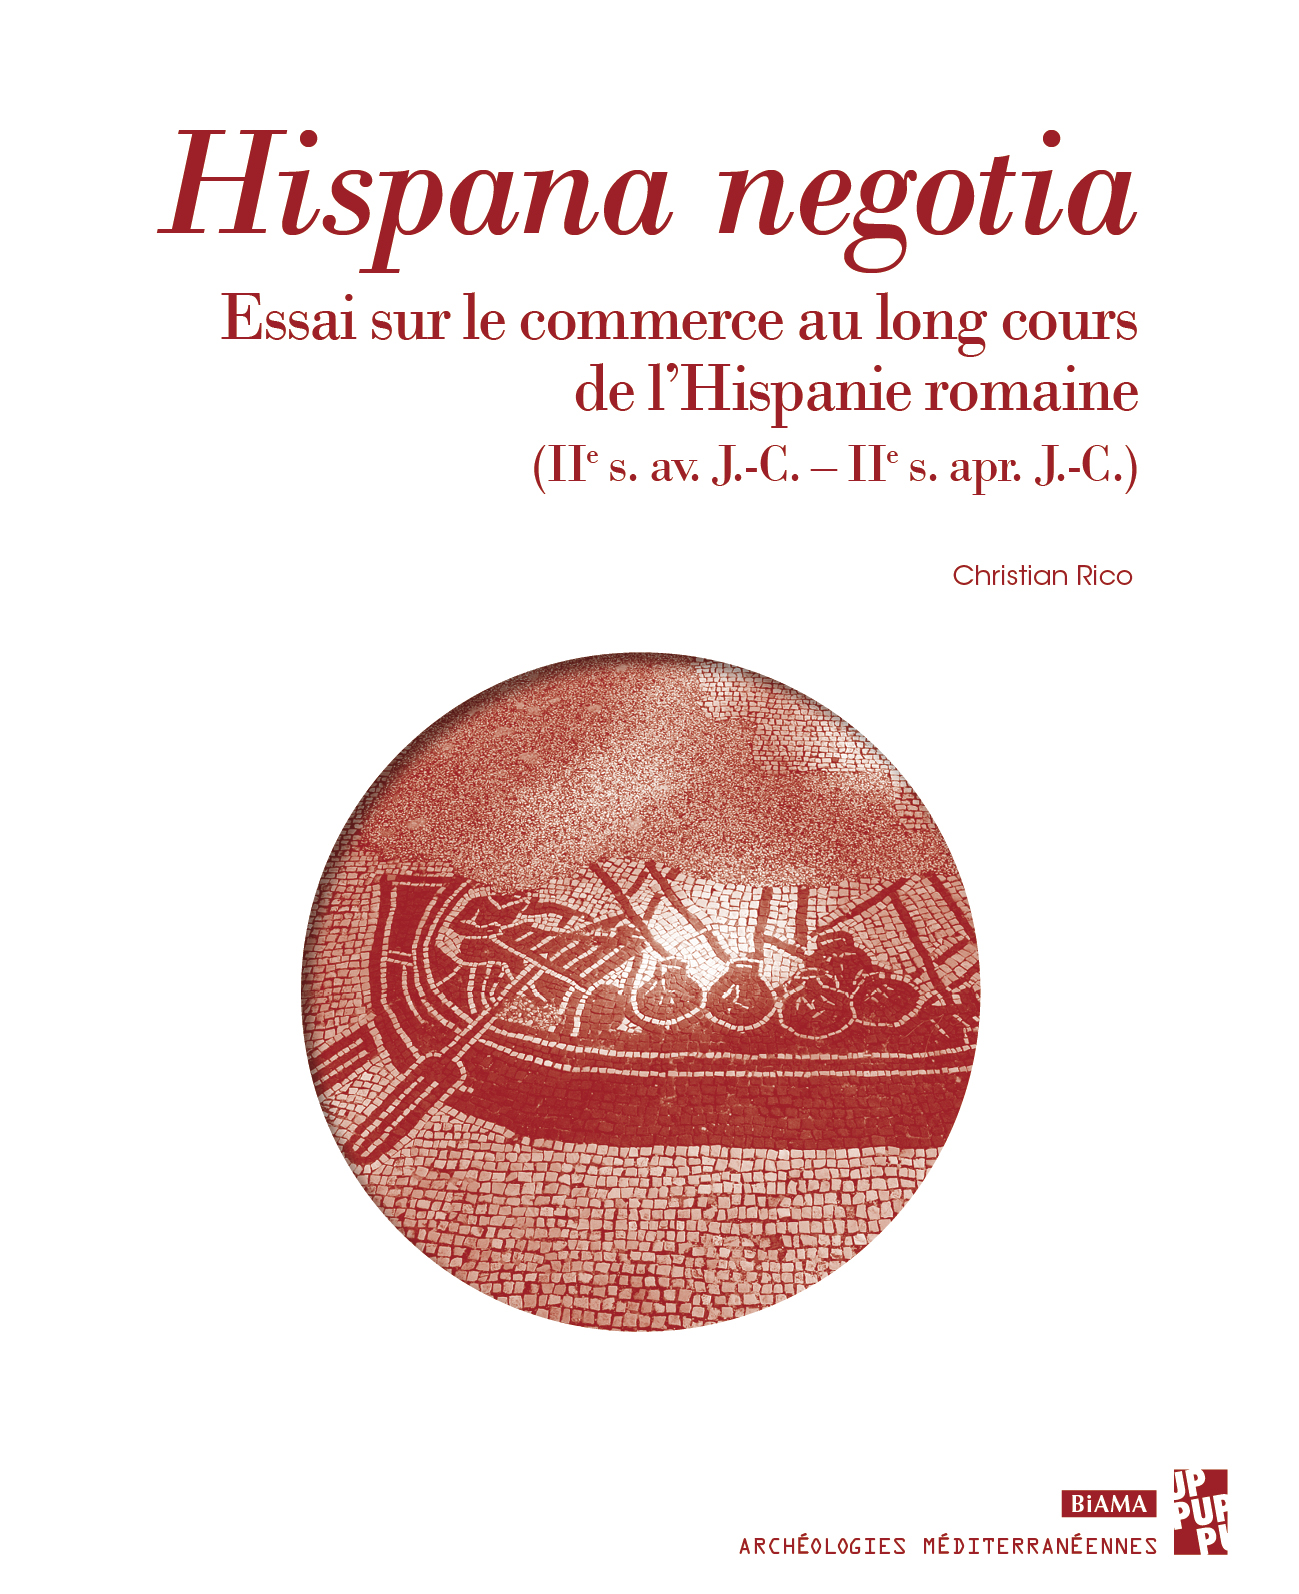 Hispana negotia. Essai sur le commerce au long cours de l'Hispanie romaine, IIe s. av. J.-C.–IIe s. apr. J.-C., 2022, 216 p.